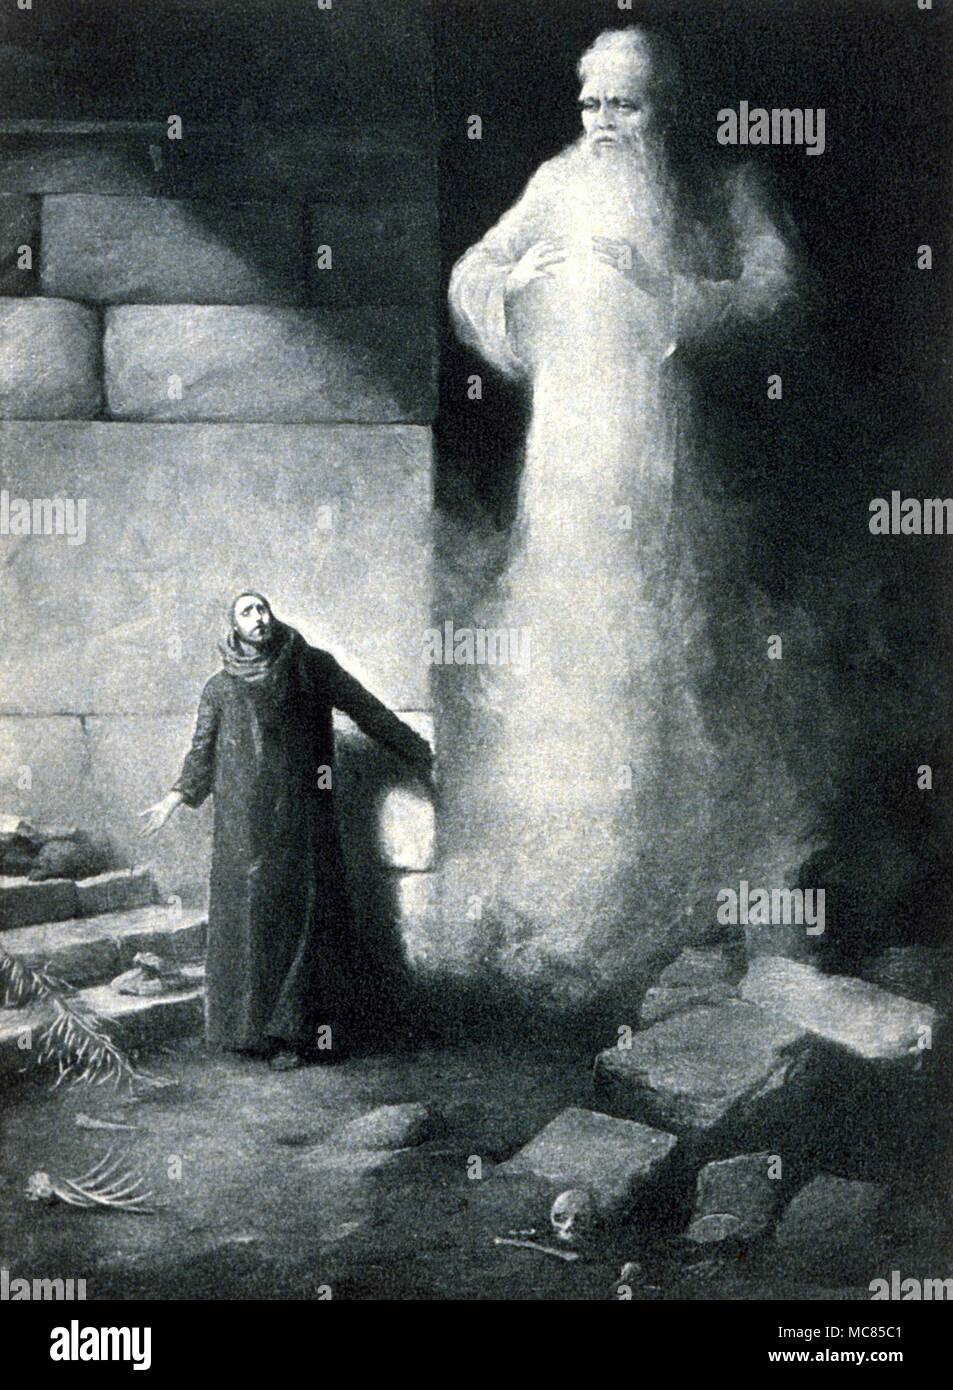 Le géant de génies, 'Le Spectrum obscur', avec Marouf. Illustration pour l'édition de John Payne 'Les Mille et Une Nuits, 1901. Banque D'Images